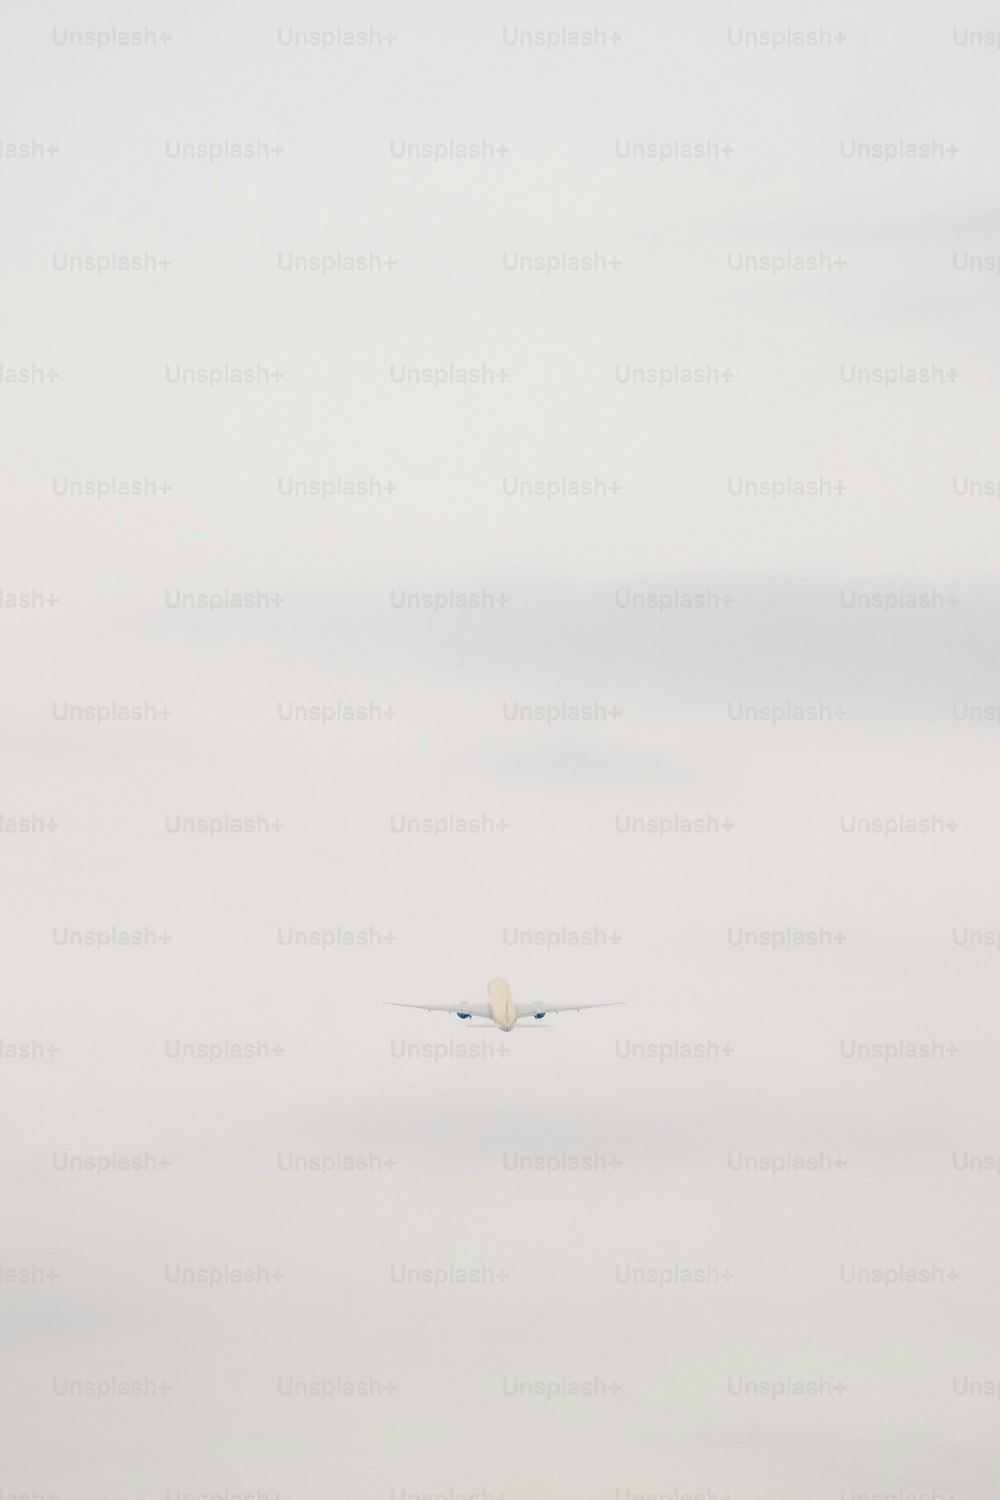 Un aeroplano che vola nel cielo con una nuvola sullo sfondo